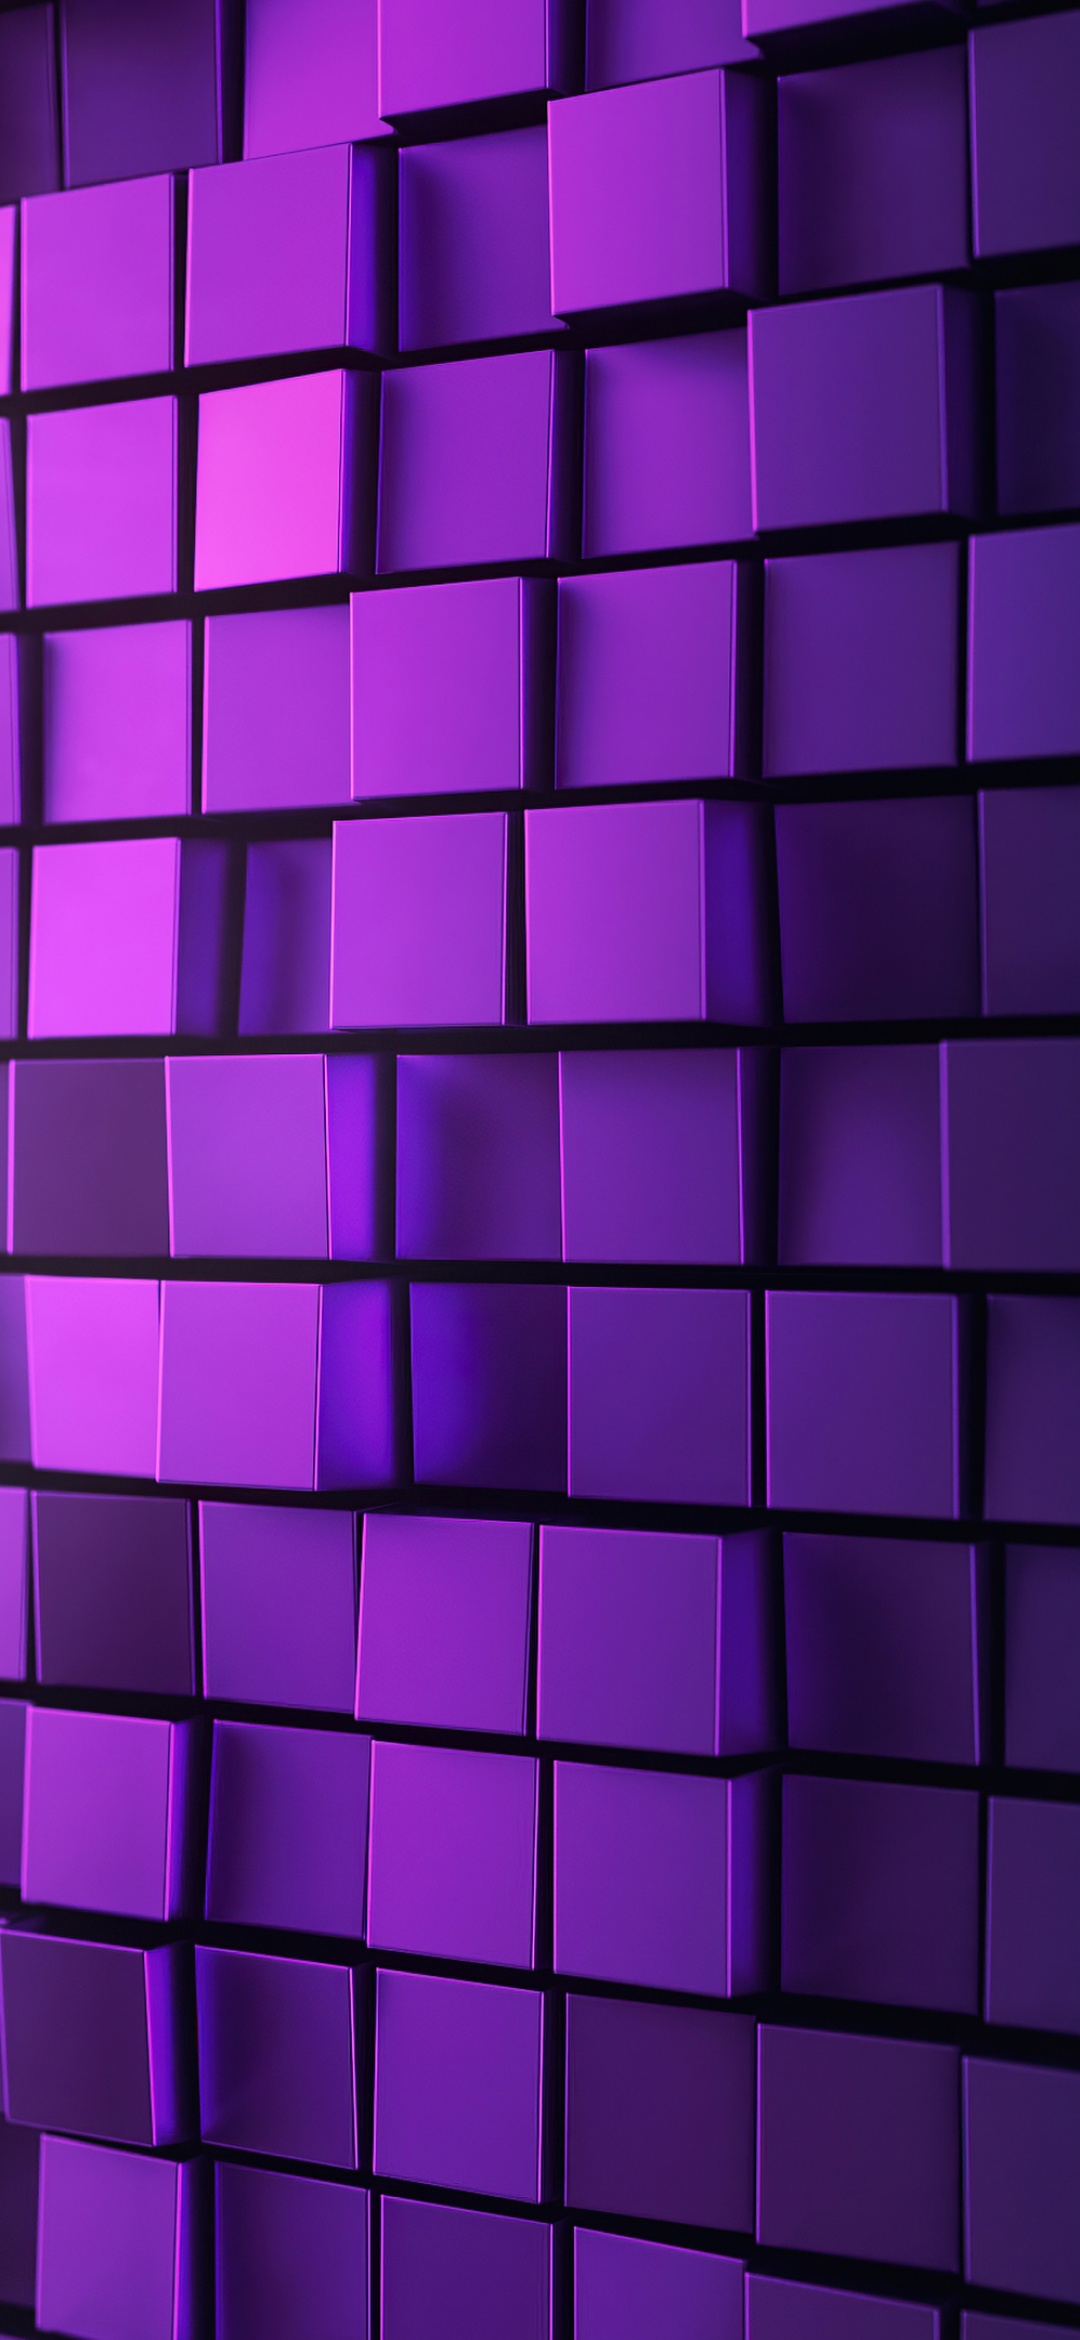 Hướng dẫn cách tạo Purple 3d background đơn giản và miễn phí